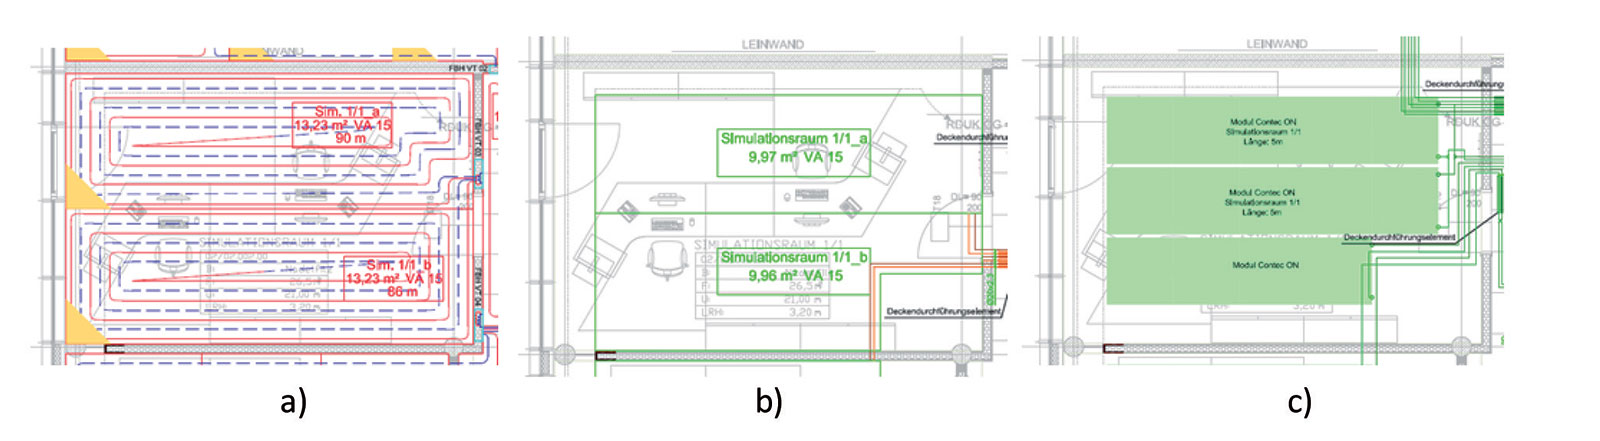 Obr. 1 a Podlahové vytápění b tepelná aktivace betonového jádra c stropní sálavé vytápění v referenční kanceláři.